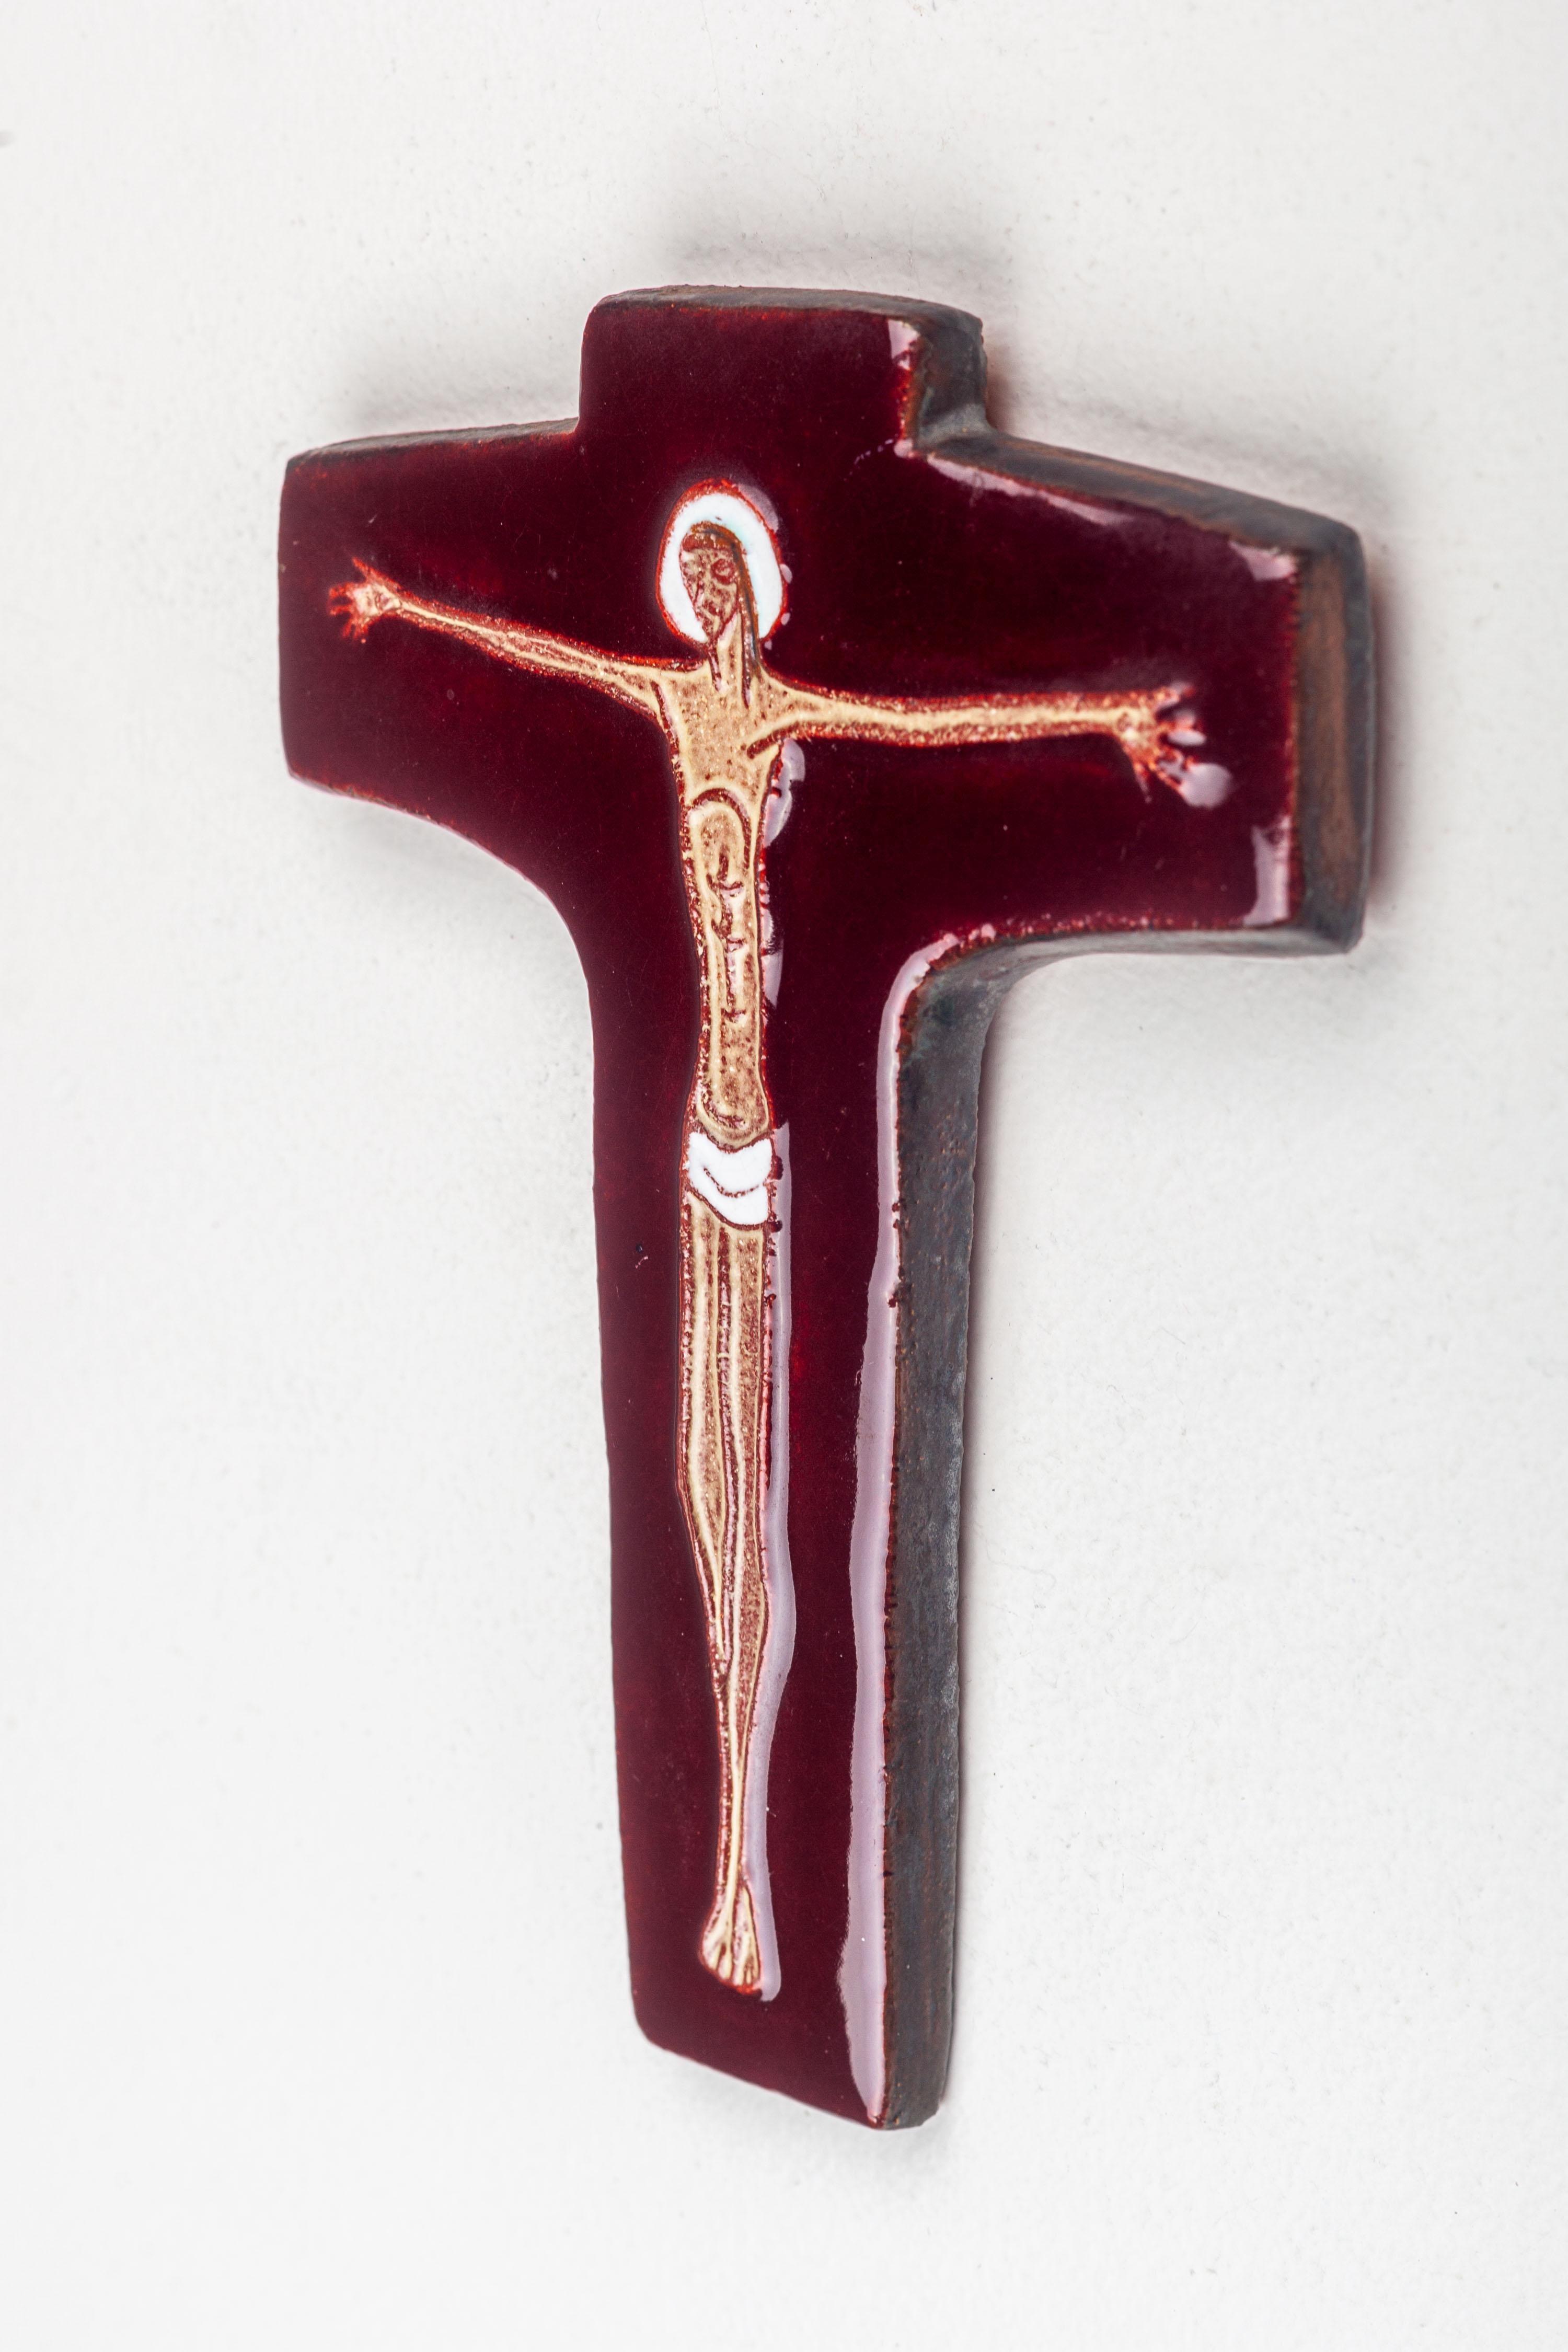 Modernistisches Kruzifix, hergestellt in Europa von Studio Pottery Künstler. Das tief rotbraune, glänzende Kreuz kontrastiert mit dem matten, langgestreckten, schwebenden Christusrelief, das in typisch modernistischer Manier gestaltet ist. Die